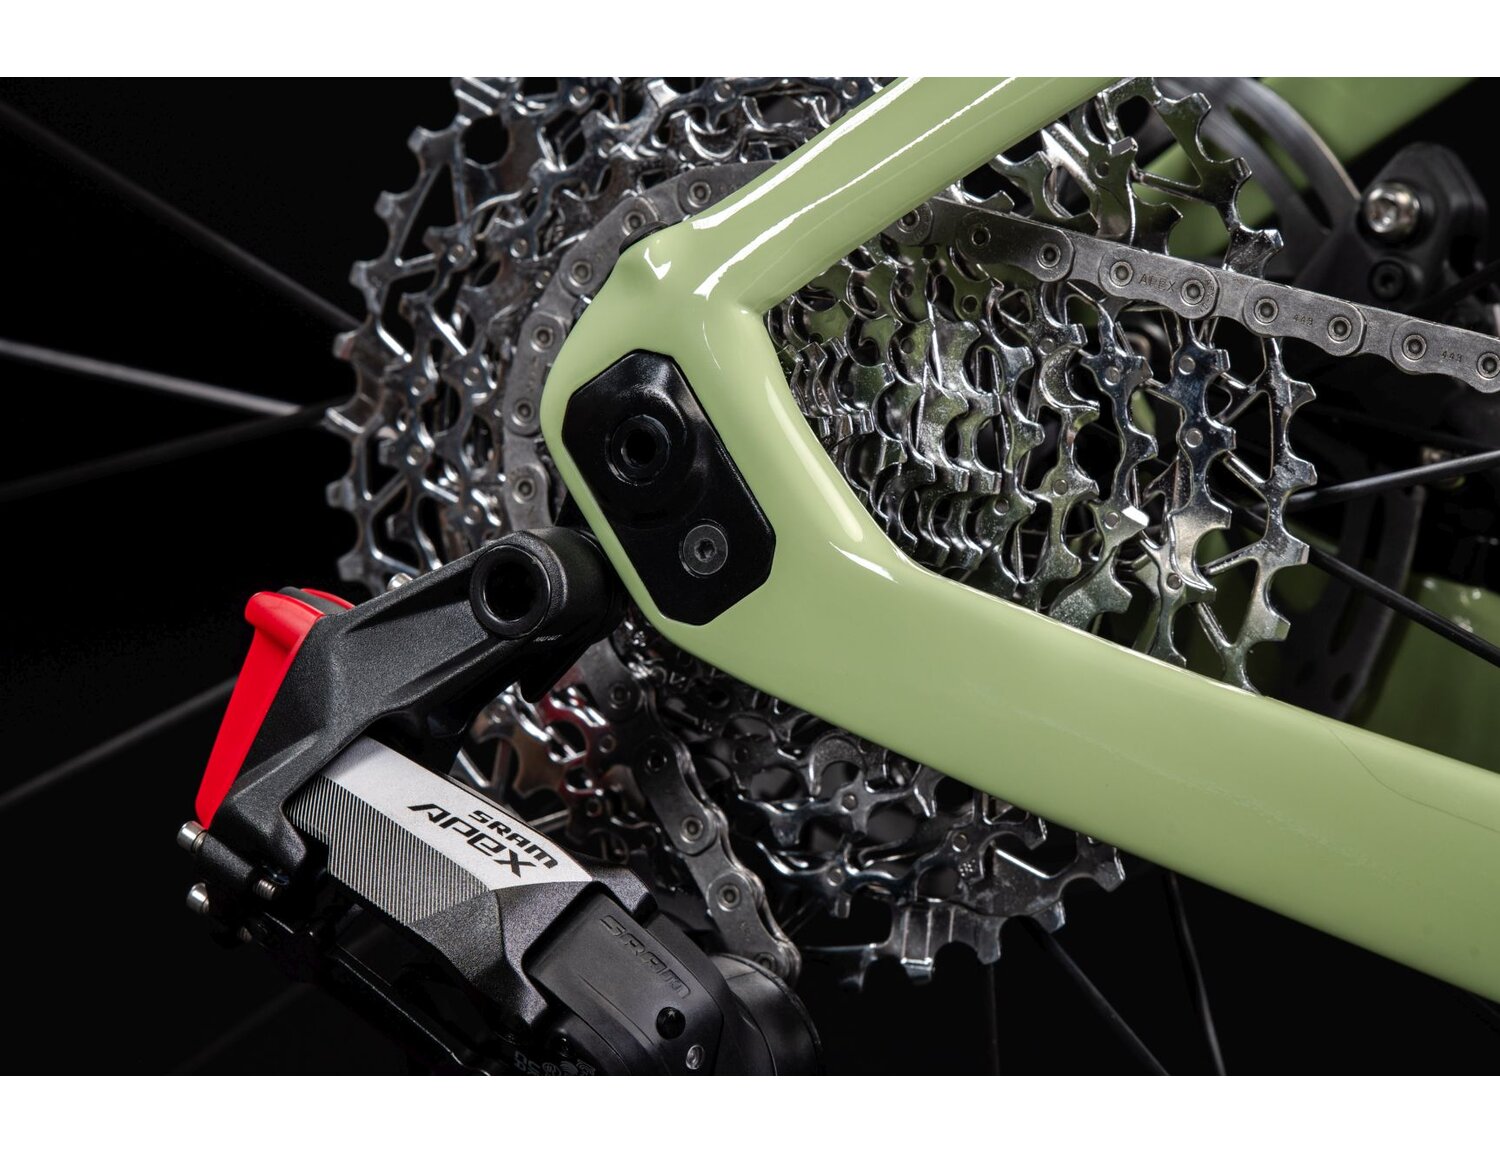  Uklad flip chip oraz tylna dwunastorzędowa przerzutka SRAM Rival XPLR AXS w rowerze gravelowym KROSS Esker RS 2.0 